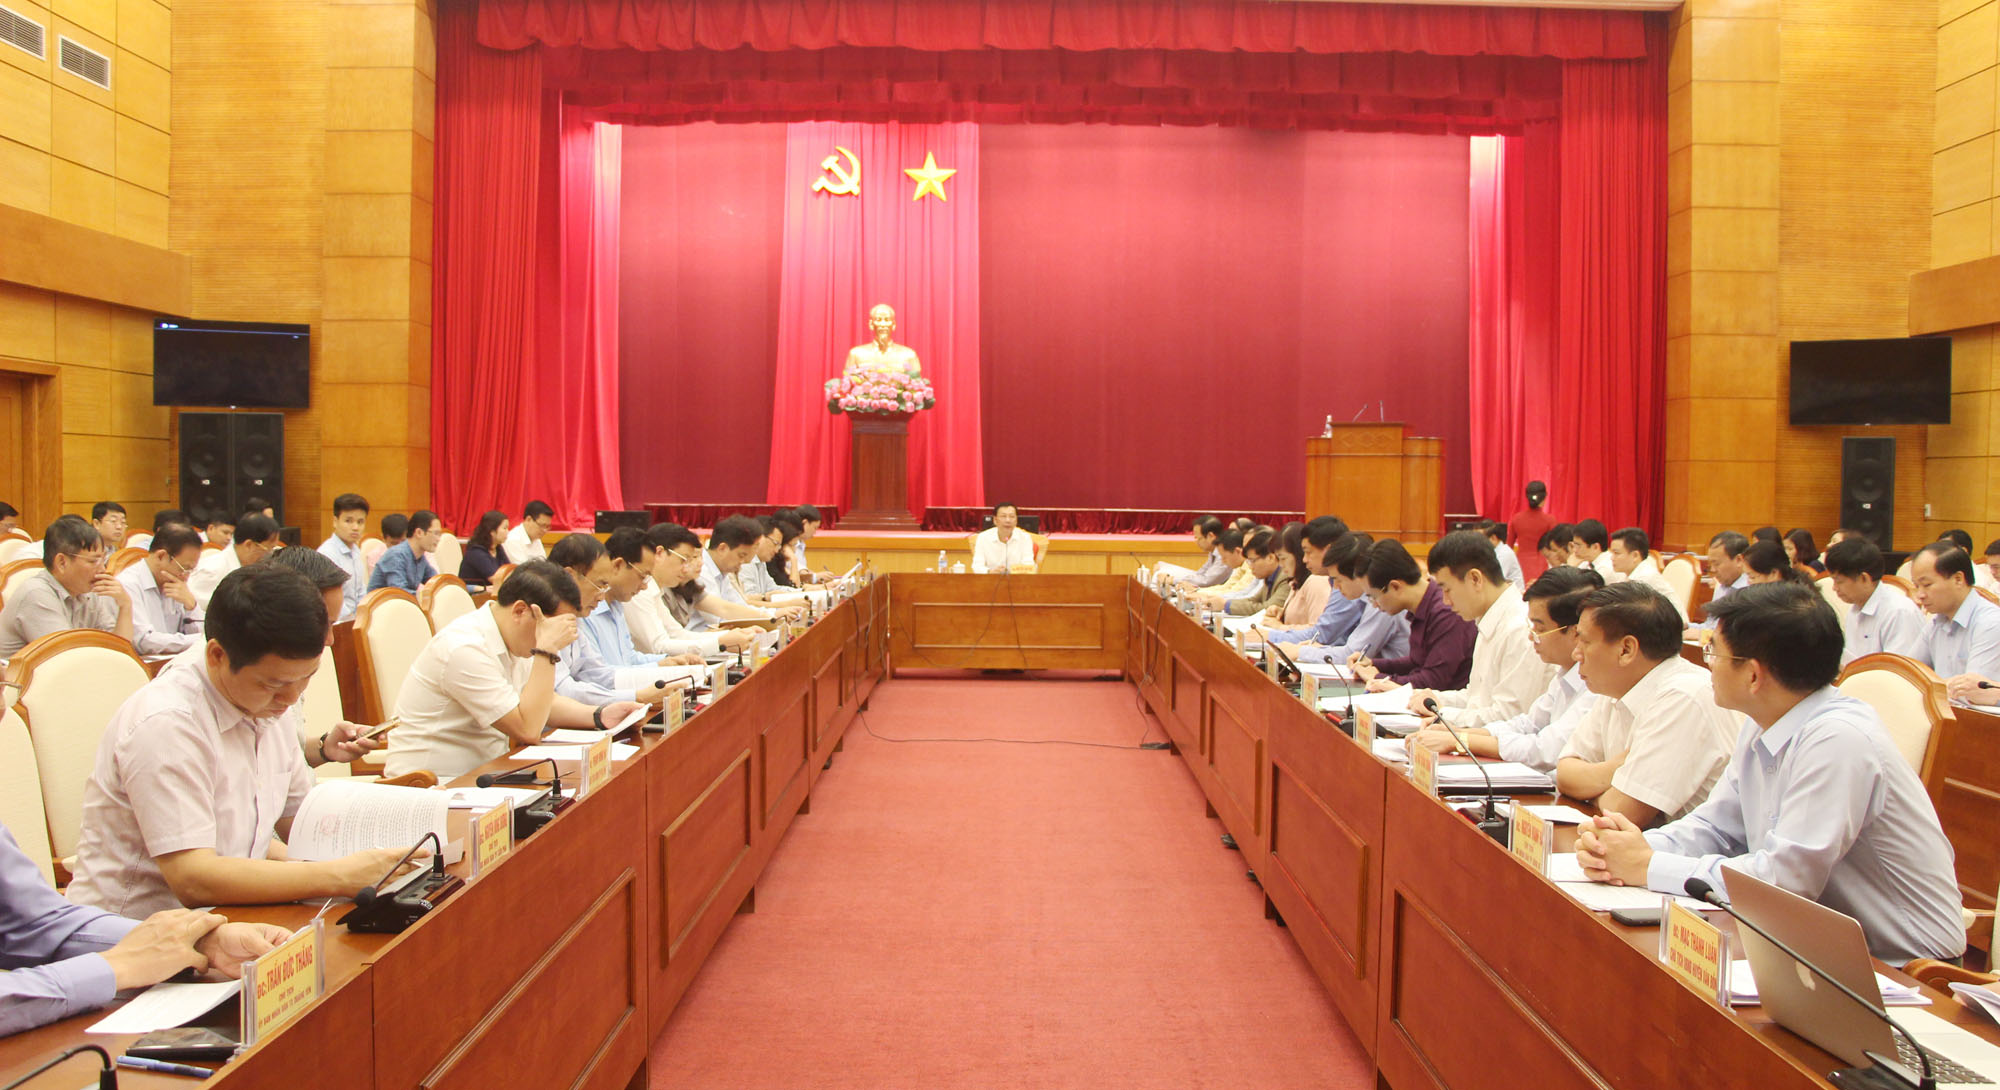 Đồng chí Nguyễn Văn Đọc, Bí thư Tỉnh ủy, Chủ tịch HĐND tỉnh, chủ trì buổi làm việc.